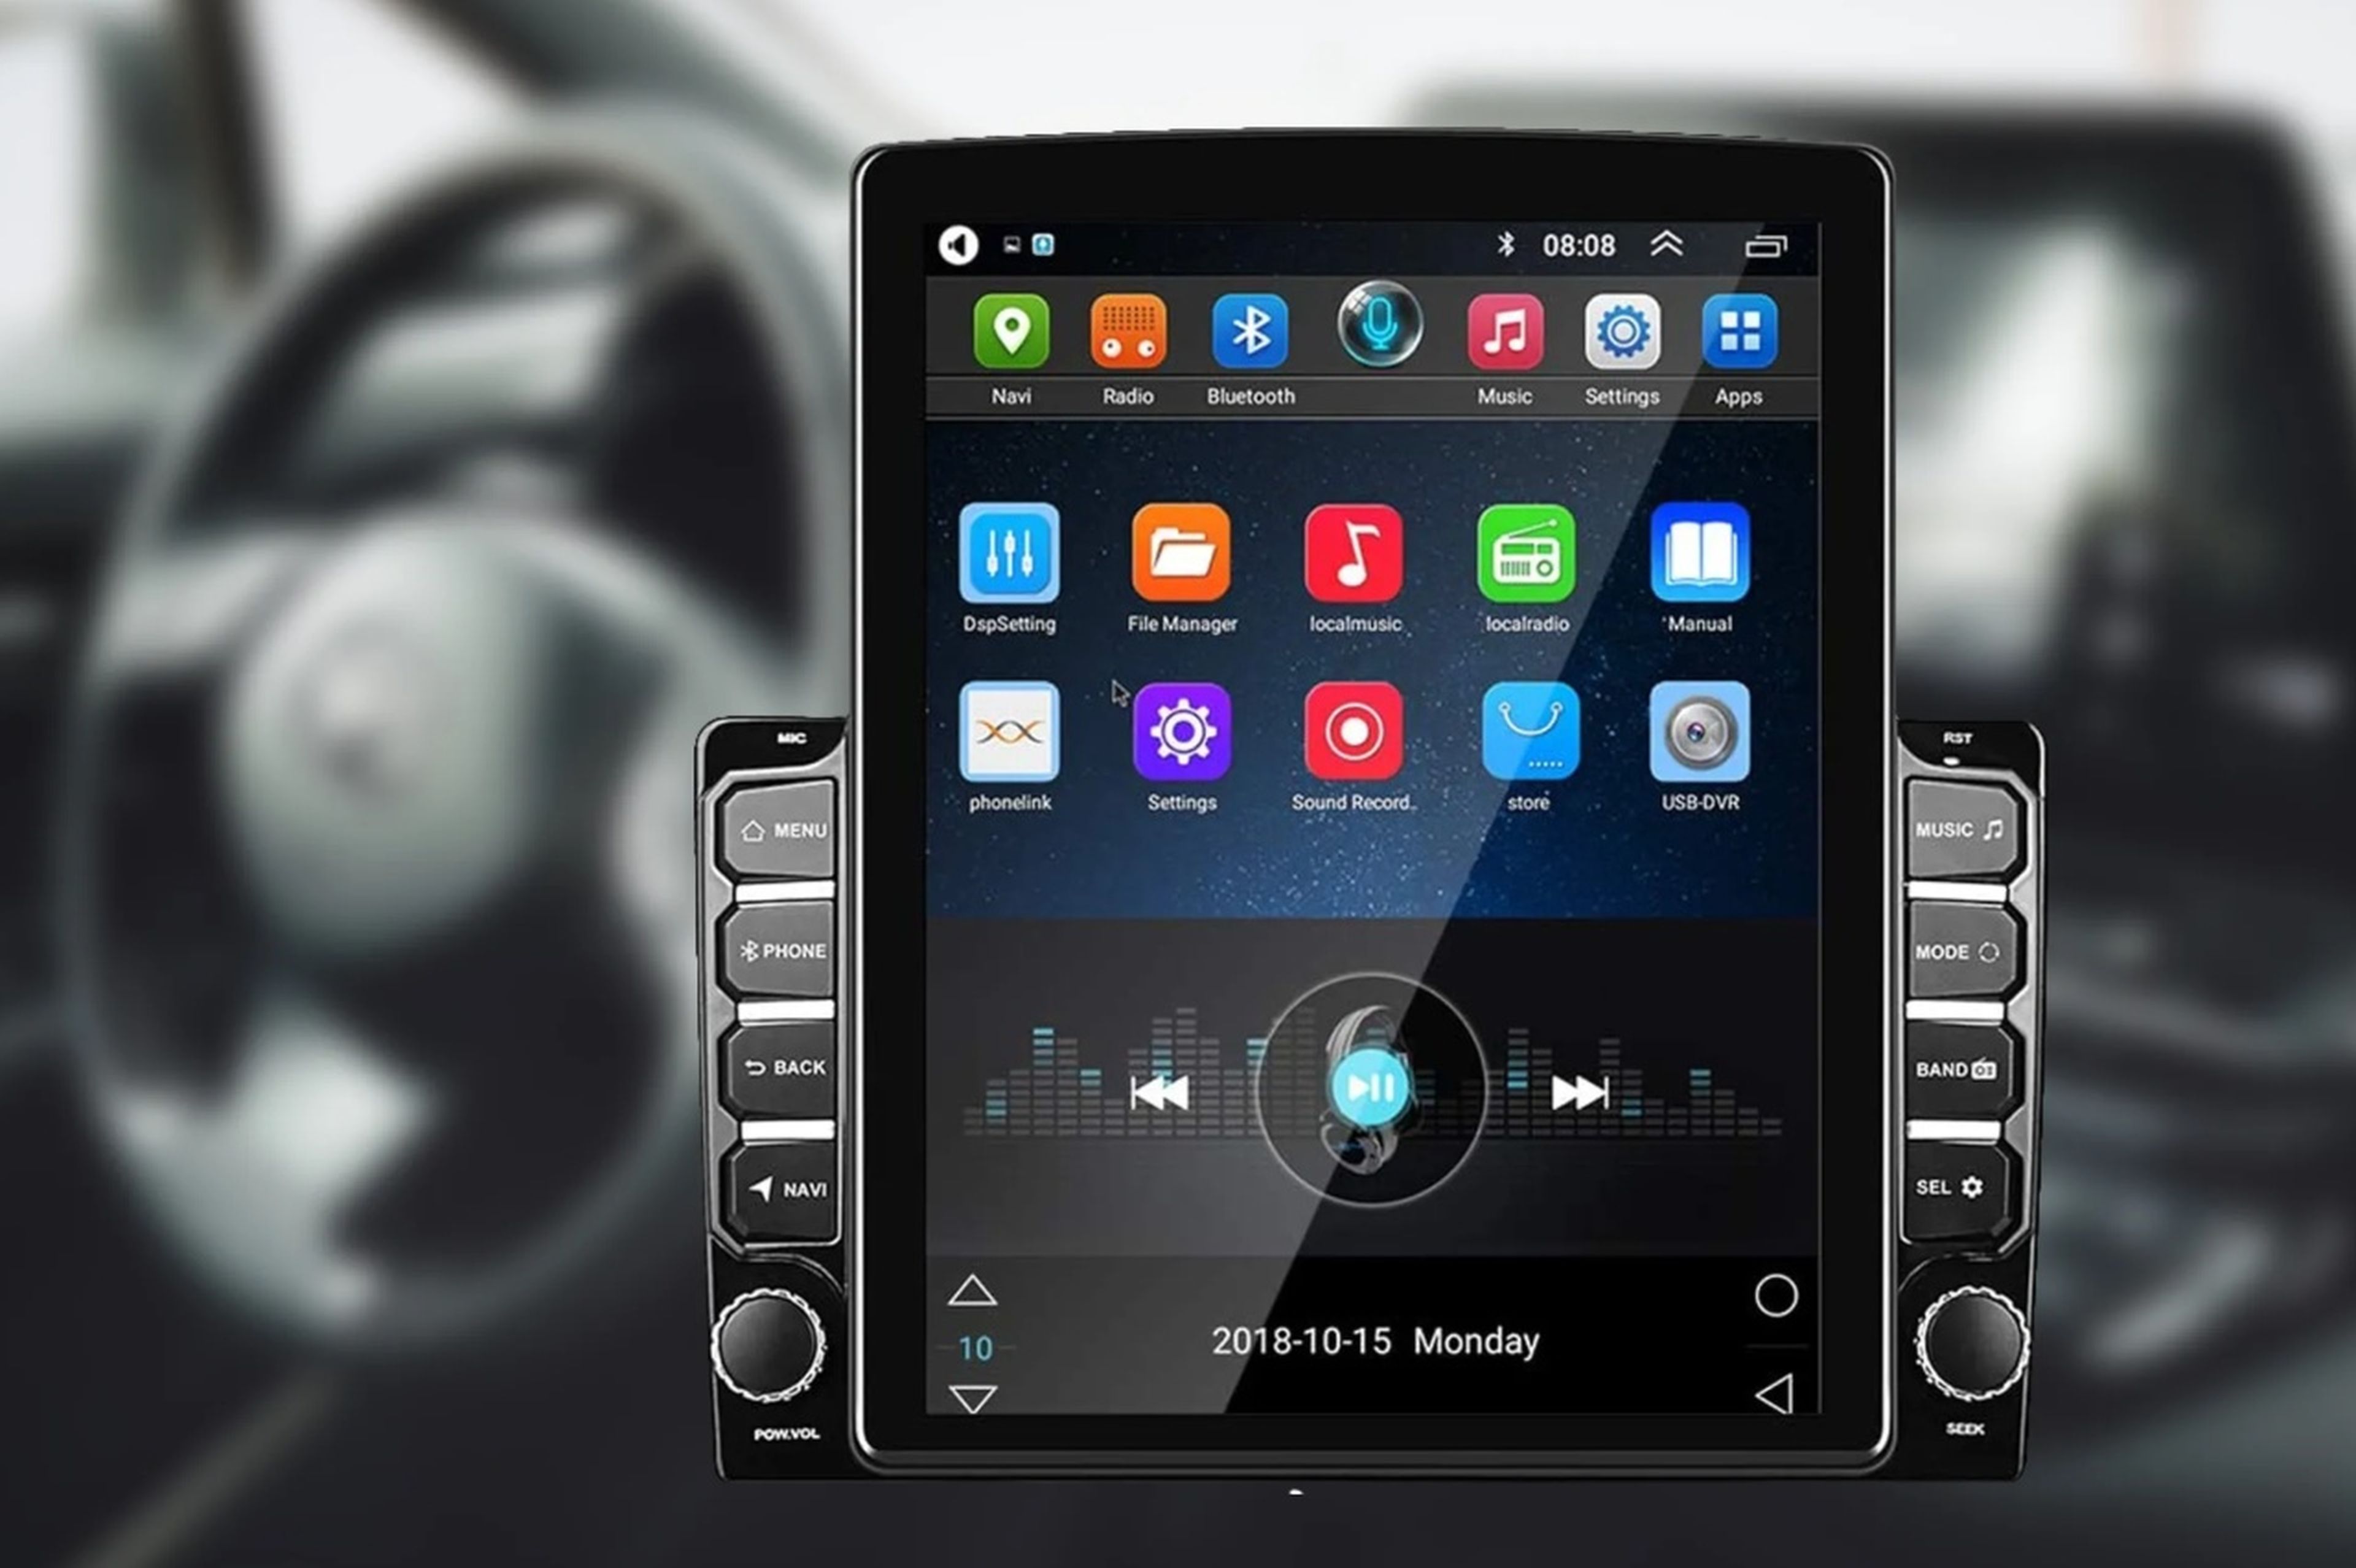 Qué pantalla Android para coche es mejor - Blogs MAPFRE